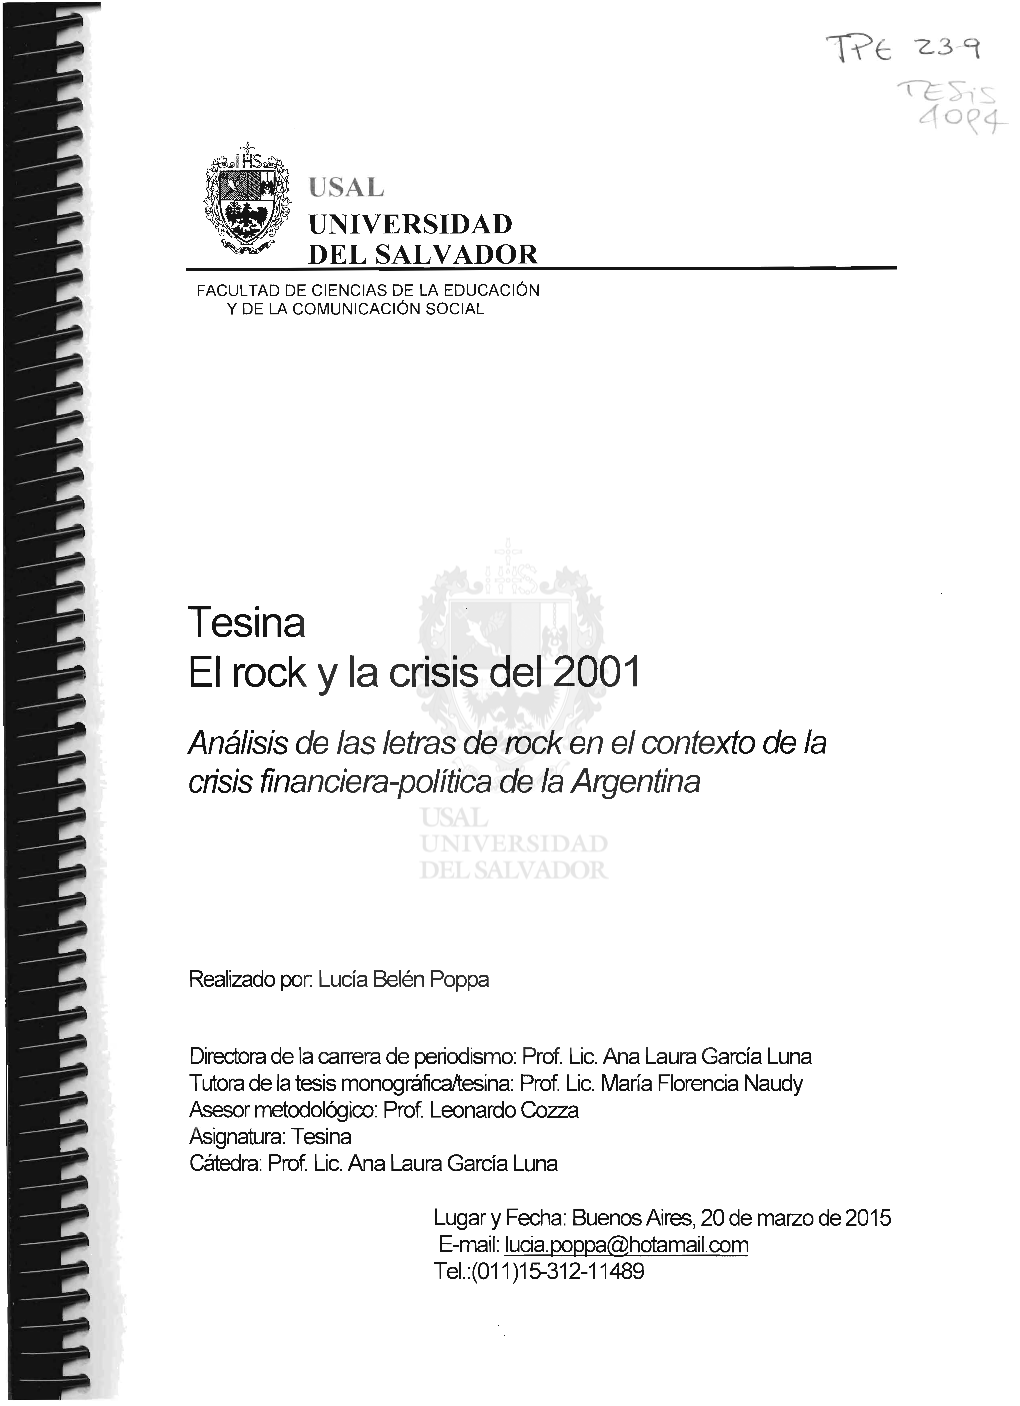 Tesina El Rack Y La Crisis Del 2001